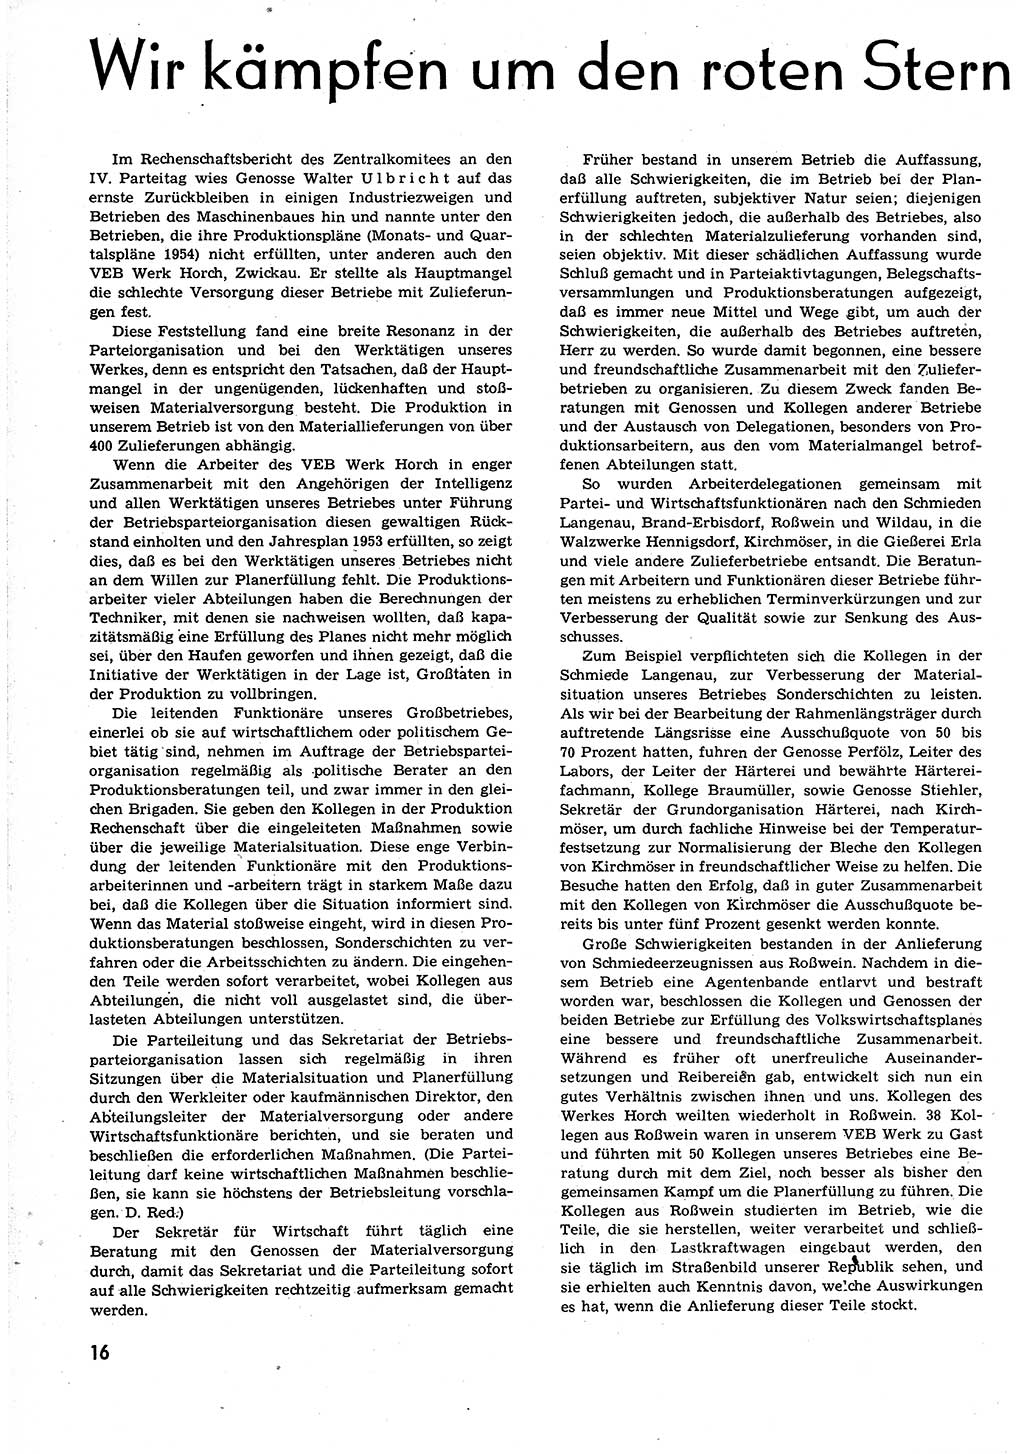 Neuer Weg (NW), Organ des Zentralkomitees (ZK) der SED (Sozialistische Einheitspartei Deutschlands) für alle Parteiarbeiter, 9. Jahrgang [Deutsche Demokratische Republik (DDR)] 1954, Heft 13/16 (NW ZK SED DDR 1954, H. 13/16)